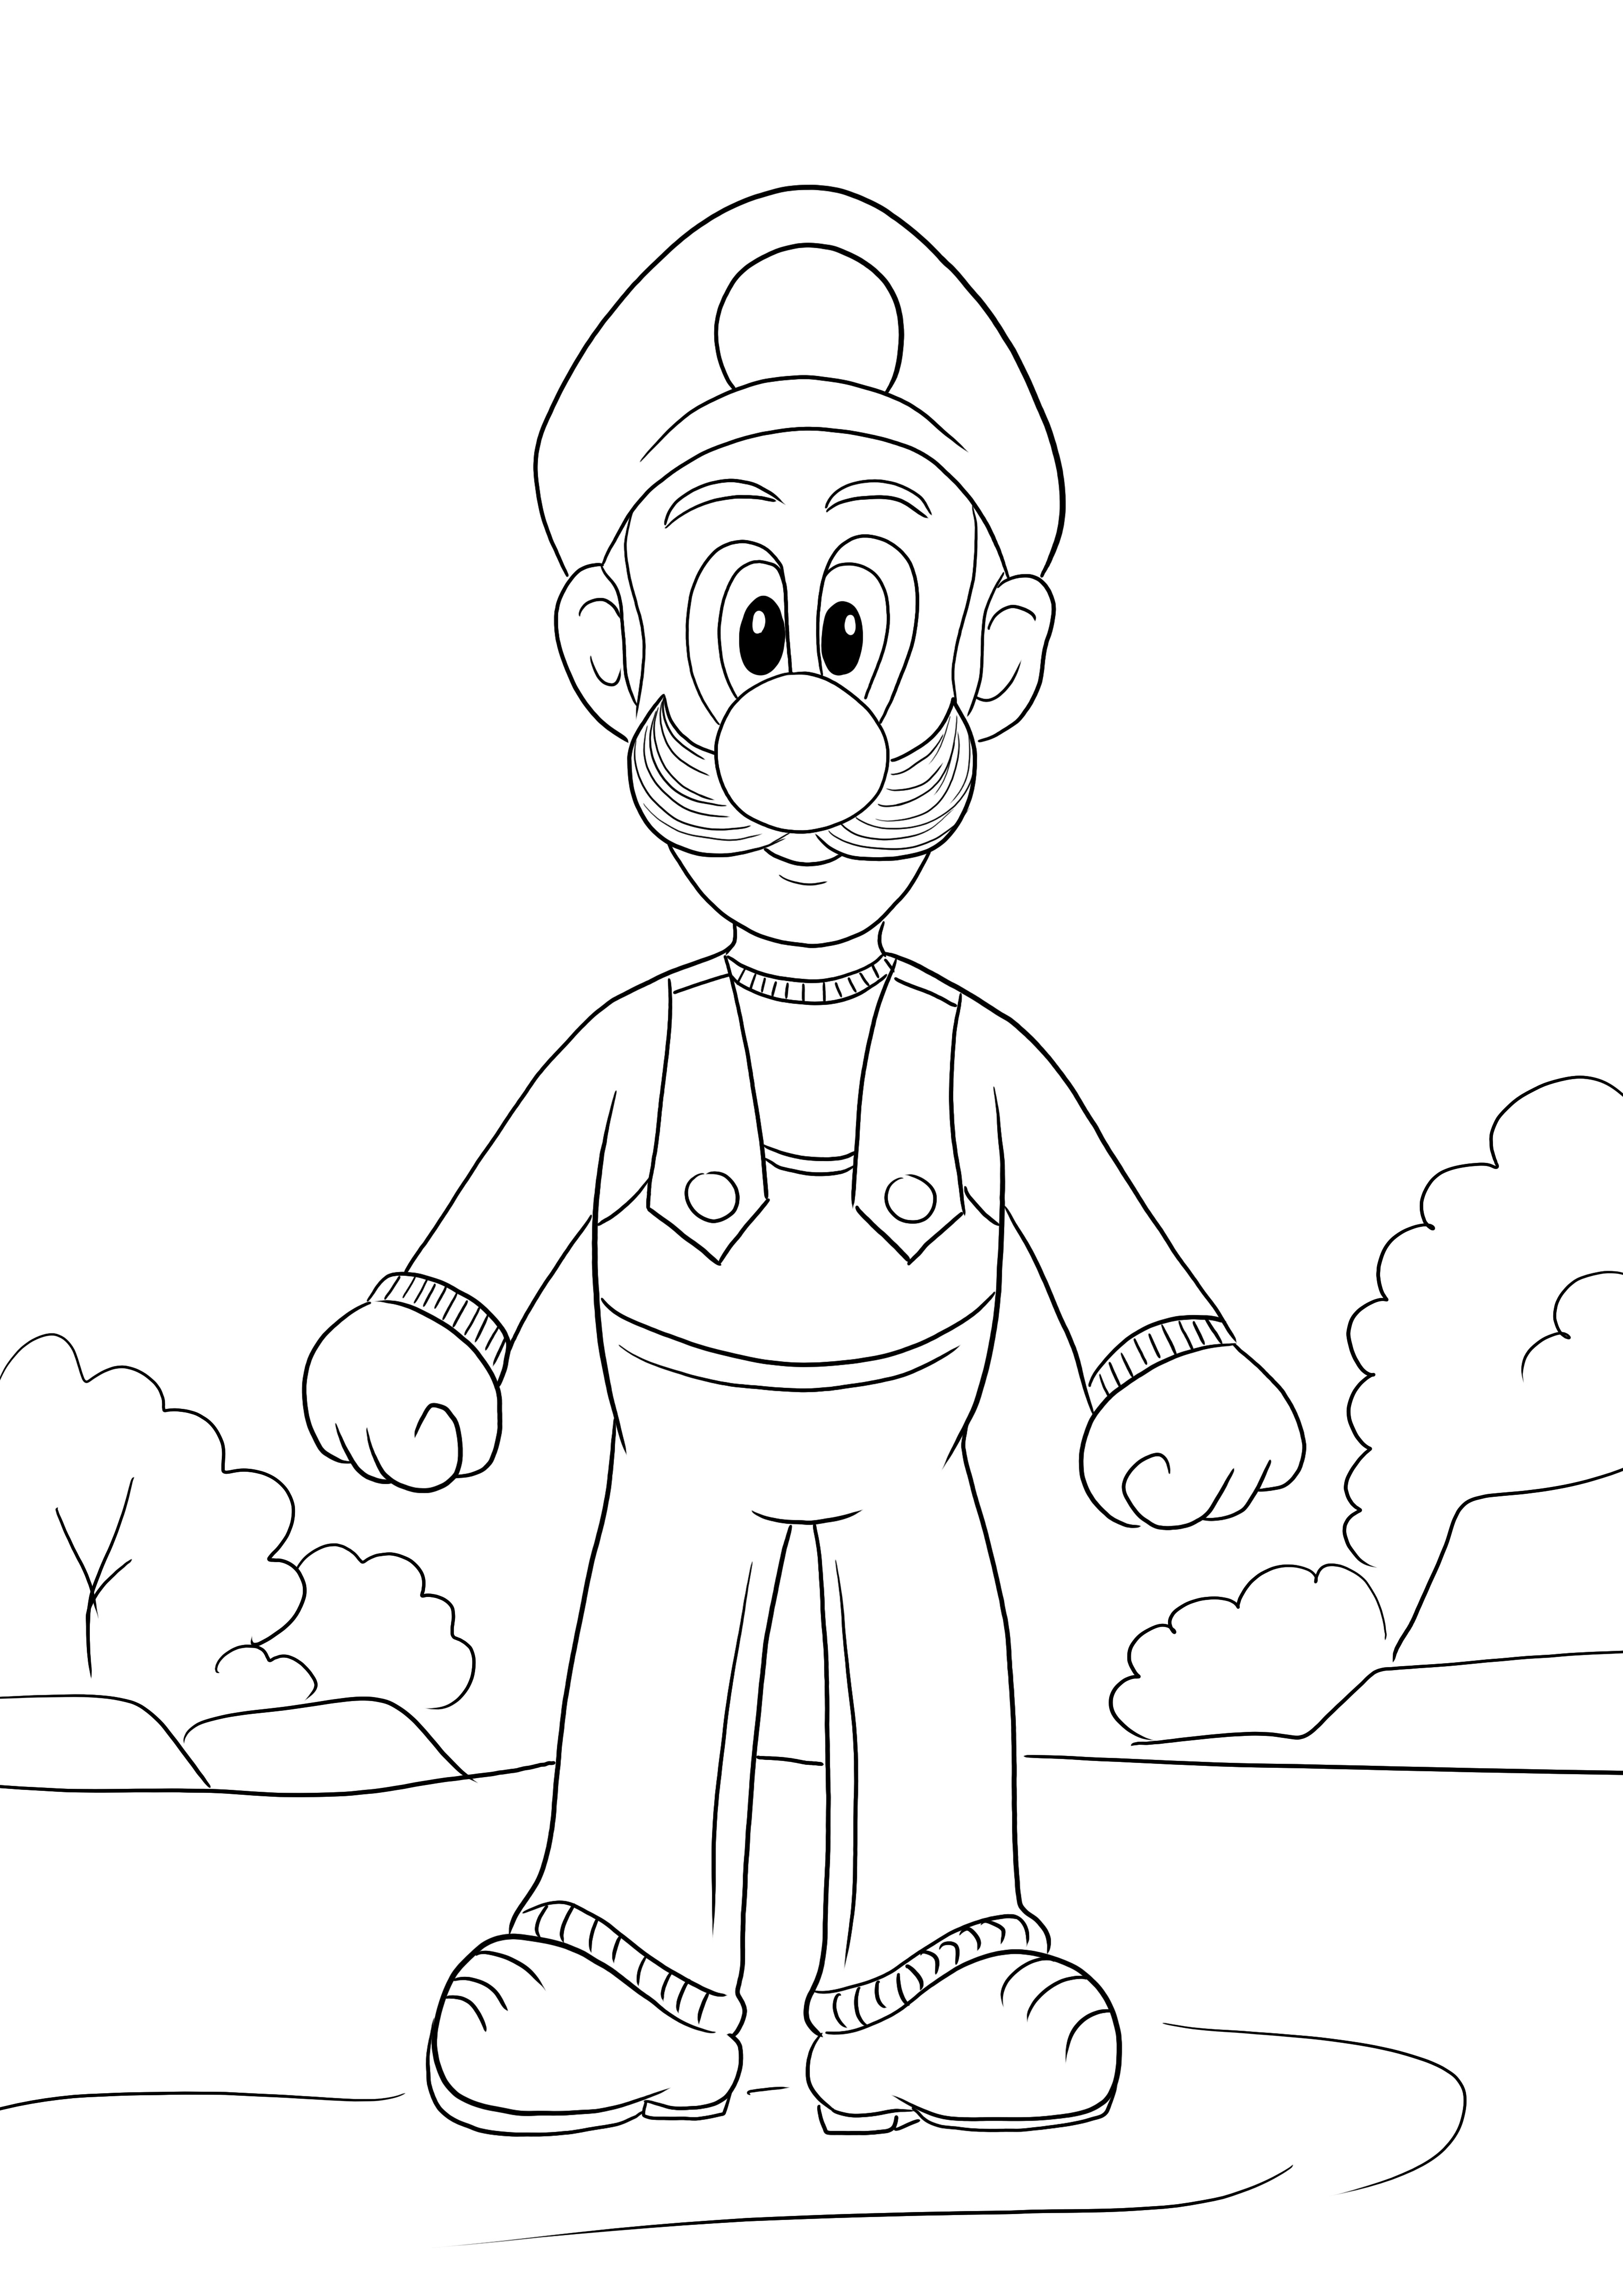 Hier ist ein kostenloses Ausmalbild von Luigi aus dem Super Mario-Spiel zum Herunterladen oder kostenlosen Ausdrucken